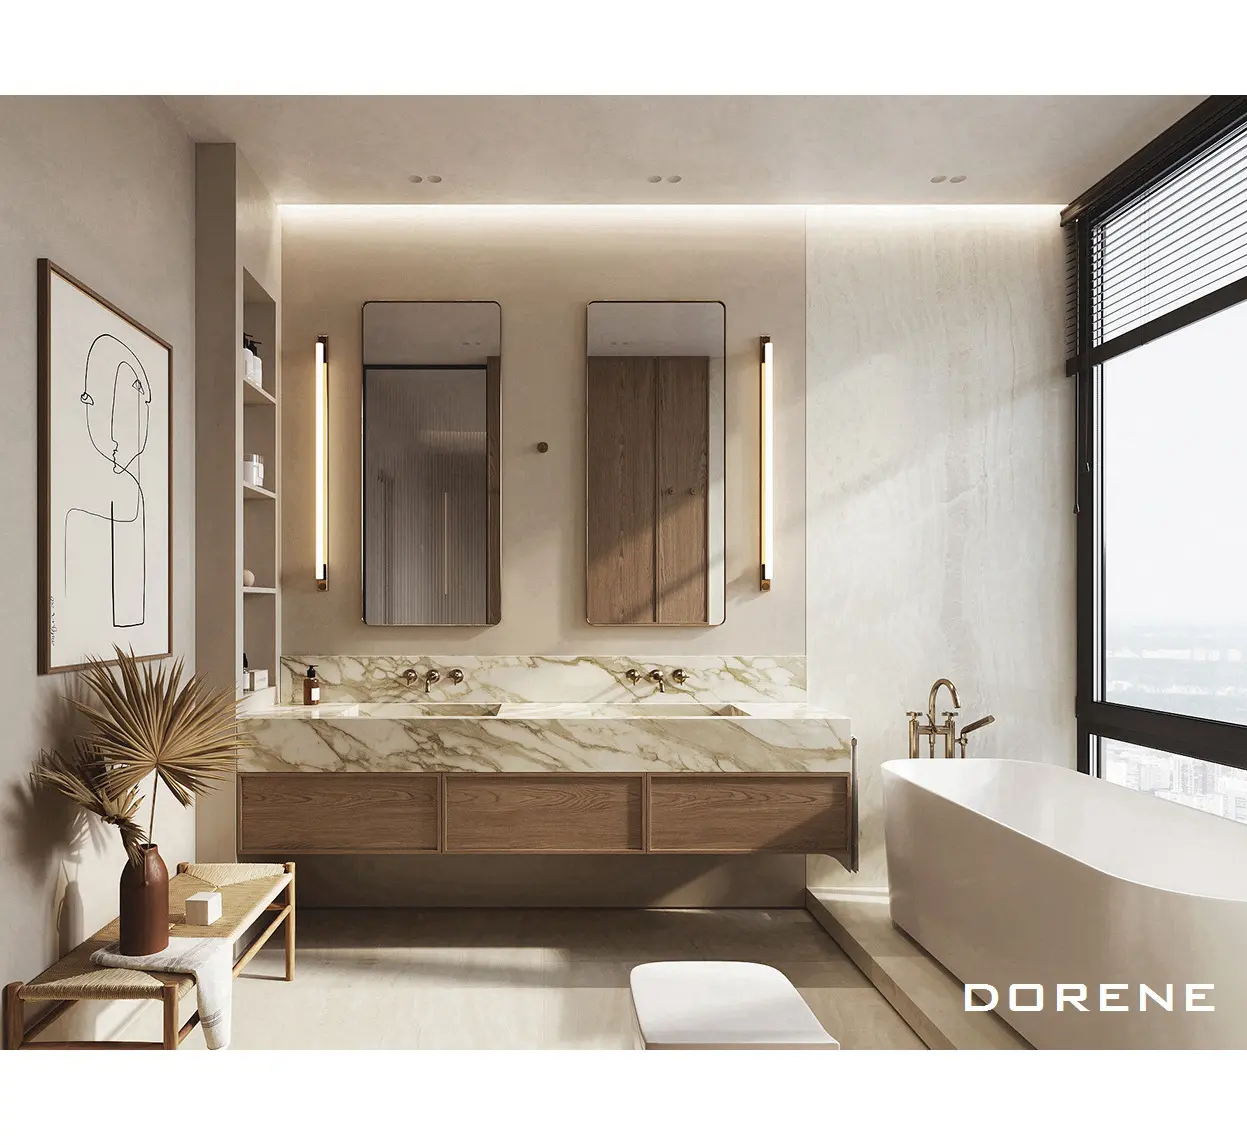 2023 Dorene البلوط الخشب الحائط مغاسل يد مزدوجة مرآة مجموعة فندق المنزل الحمام الأثاث الحديثة خزانات الحمام و بالباطل